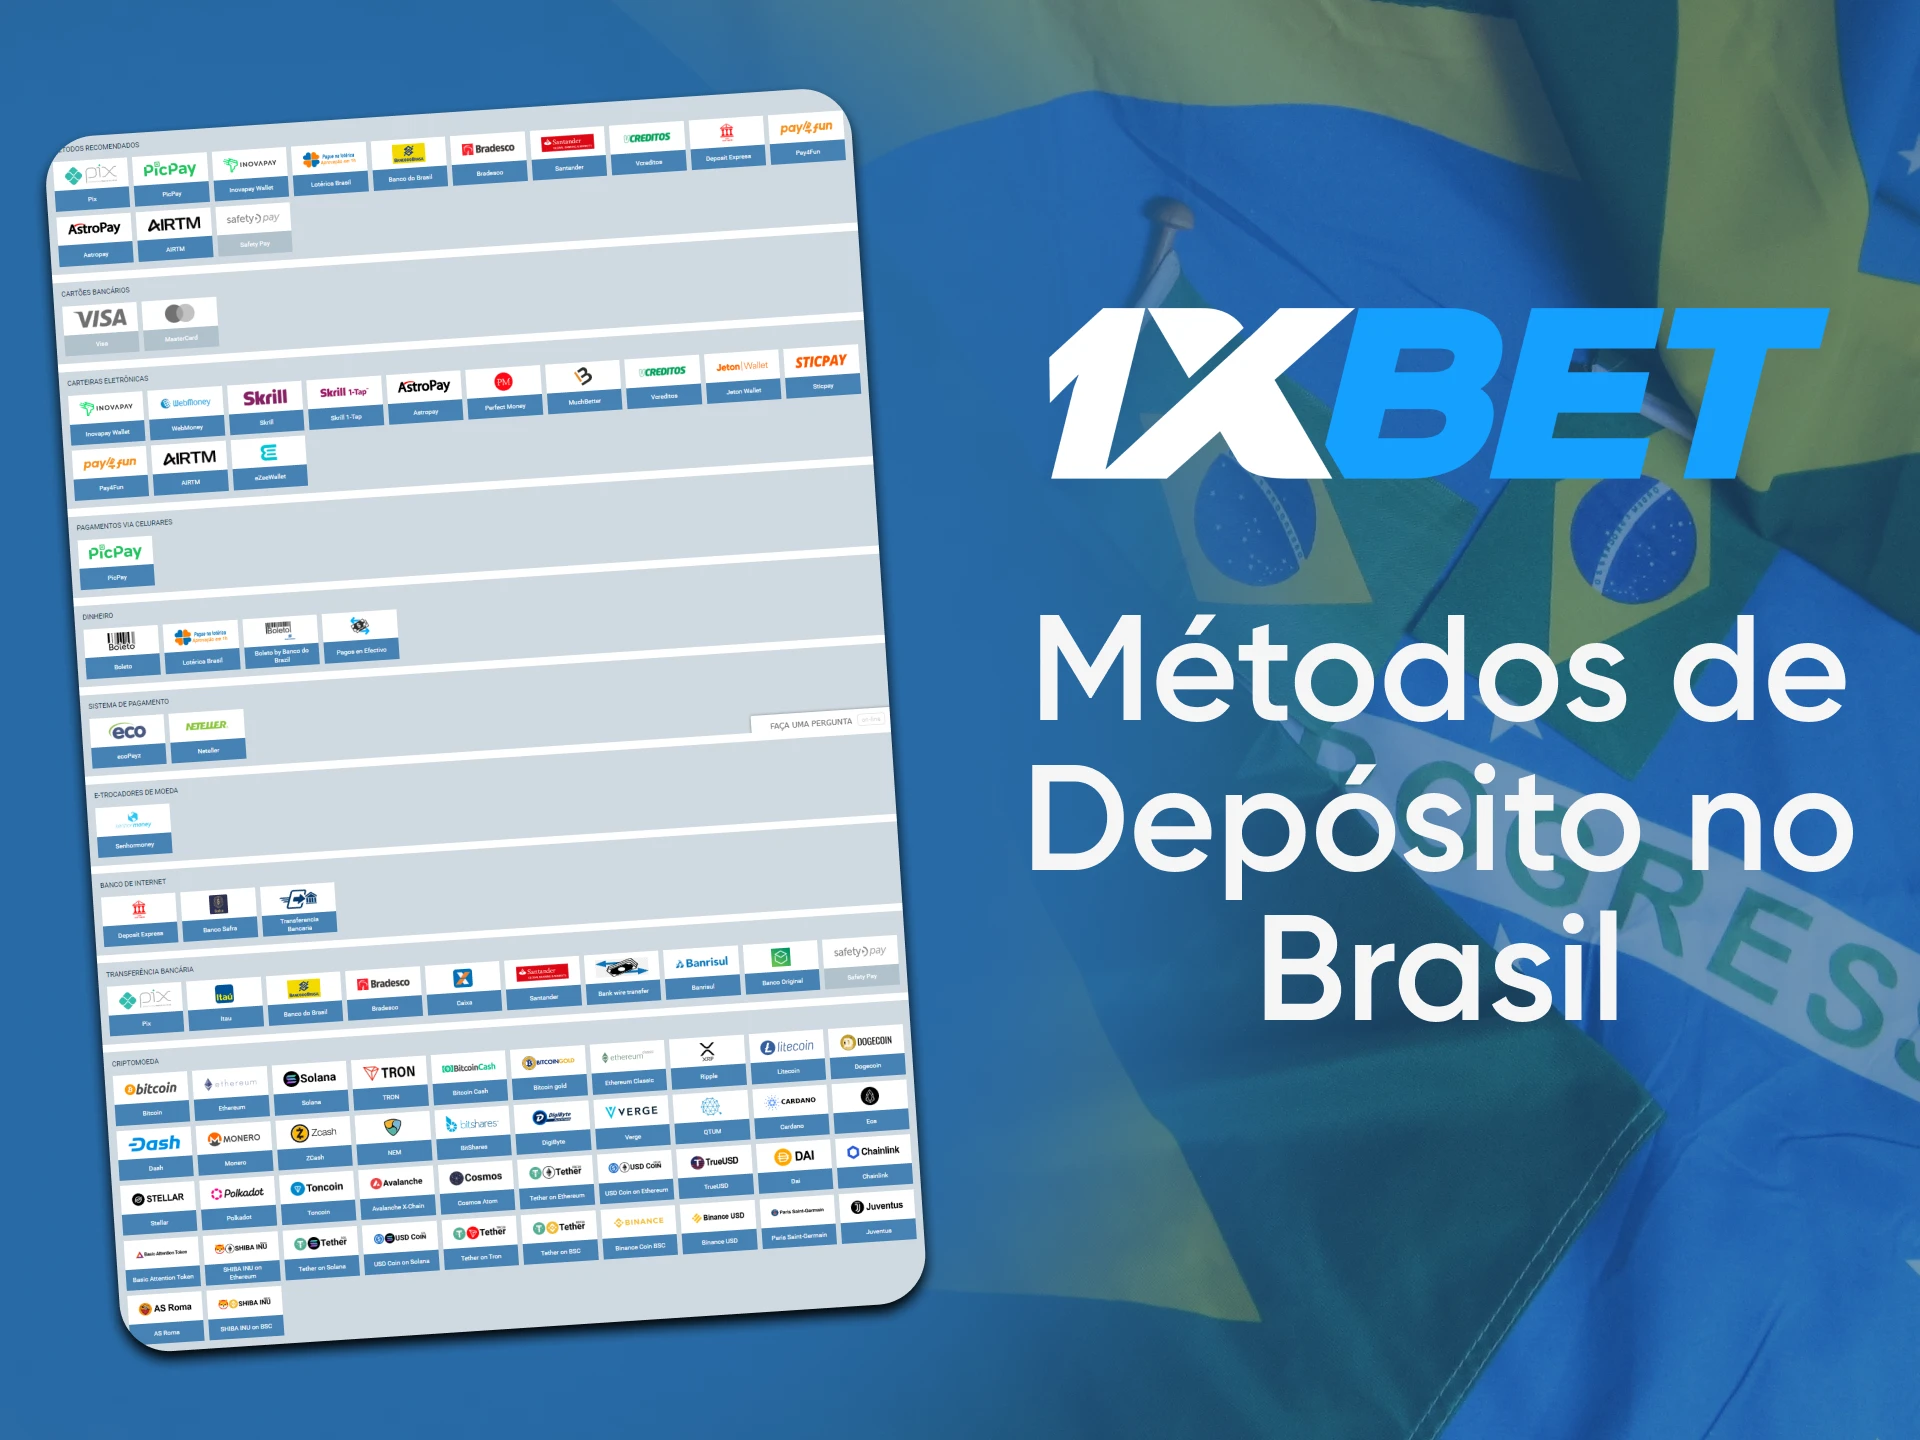 1xBet apóia os métodos locais de depósito no Brasil.